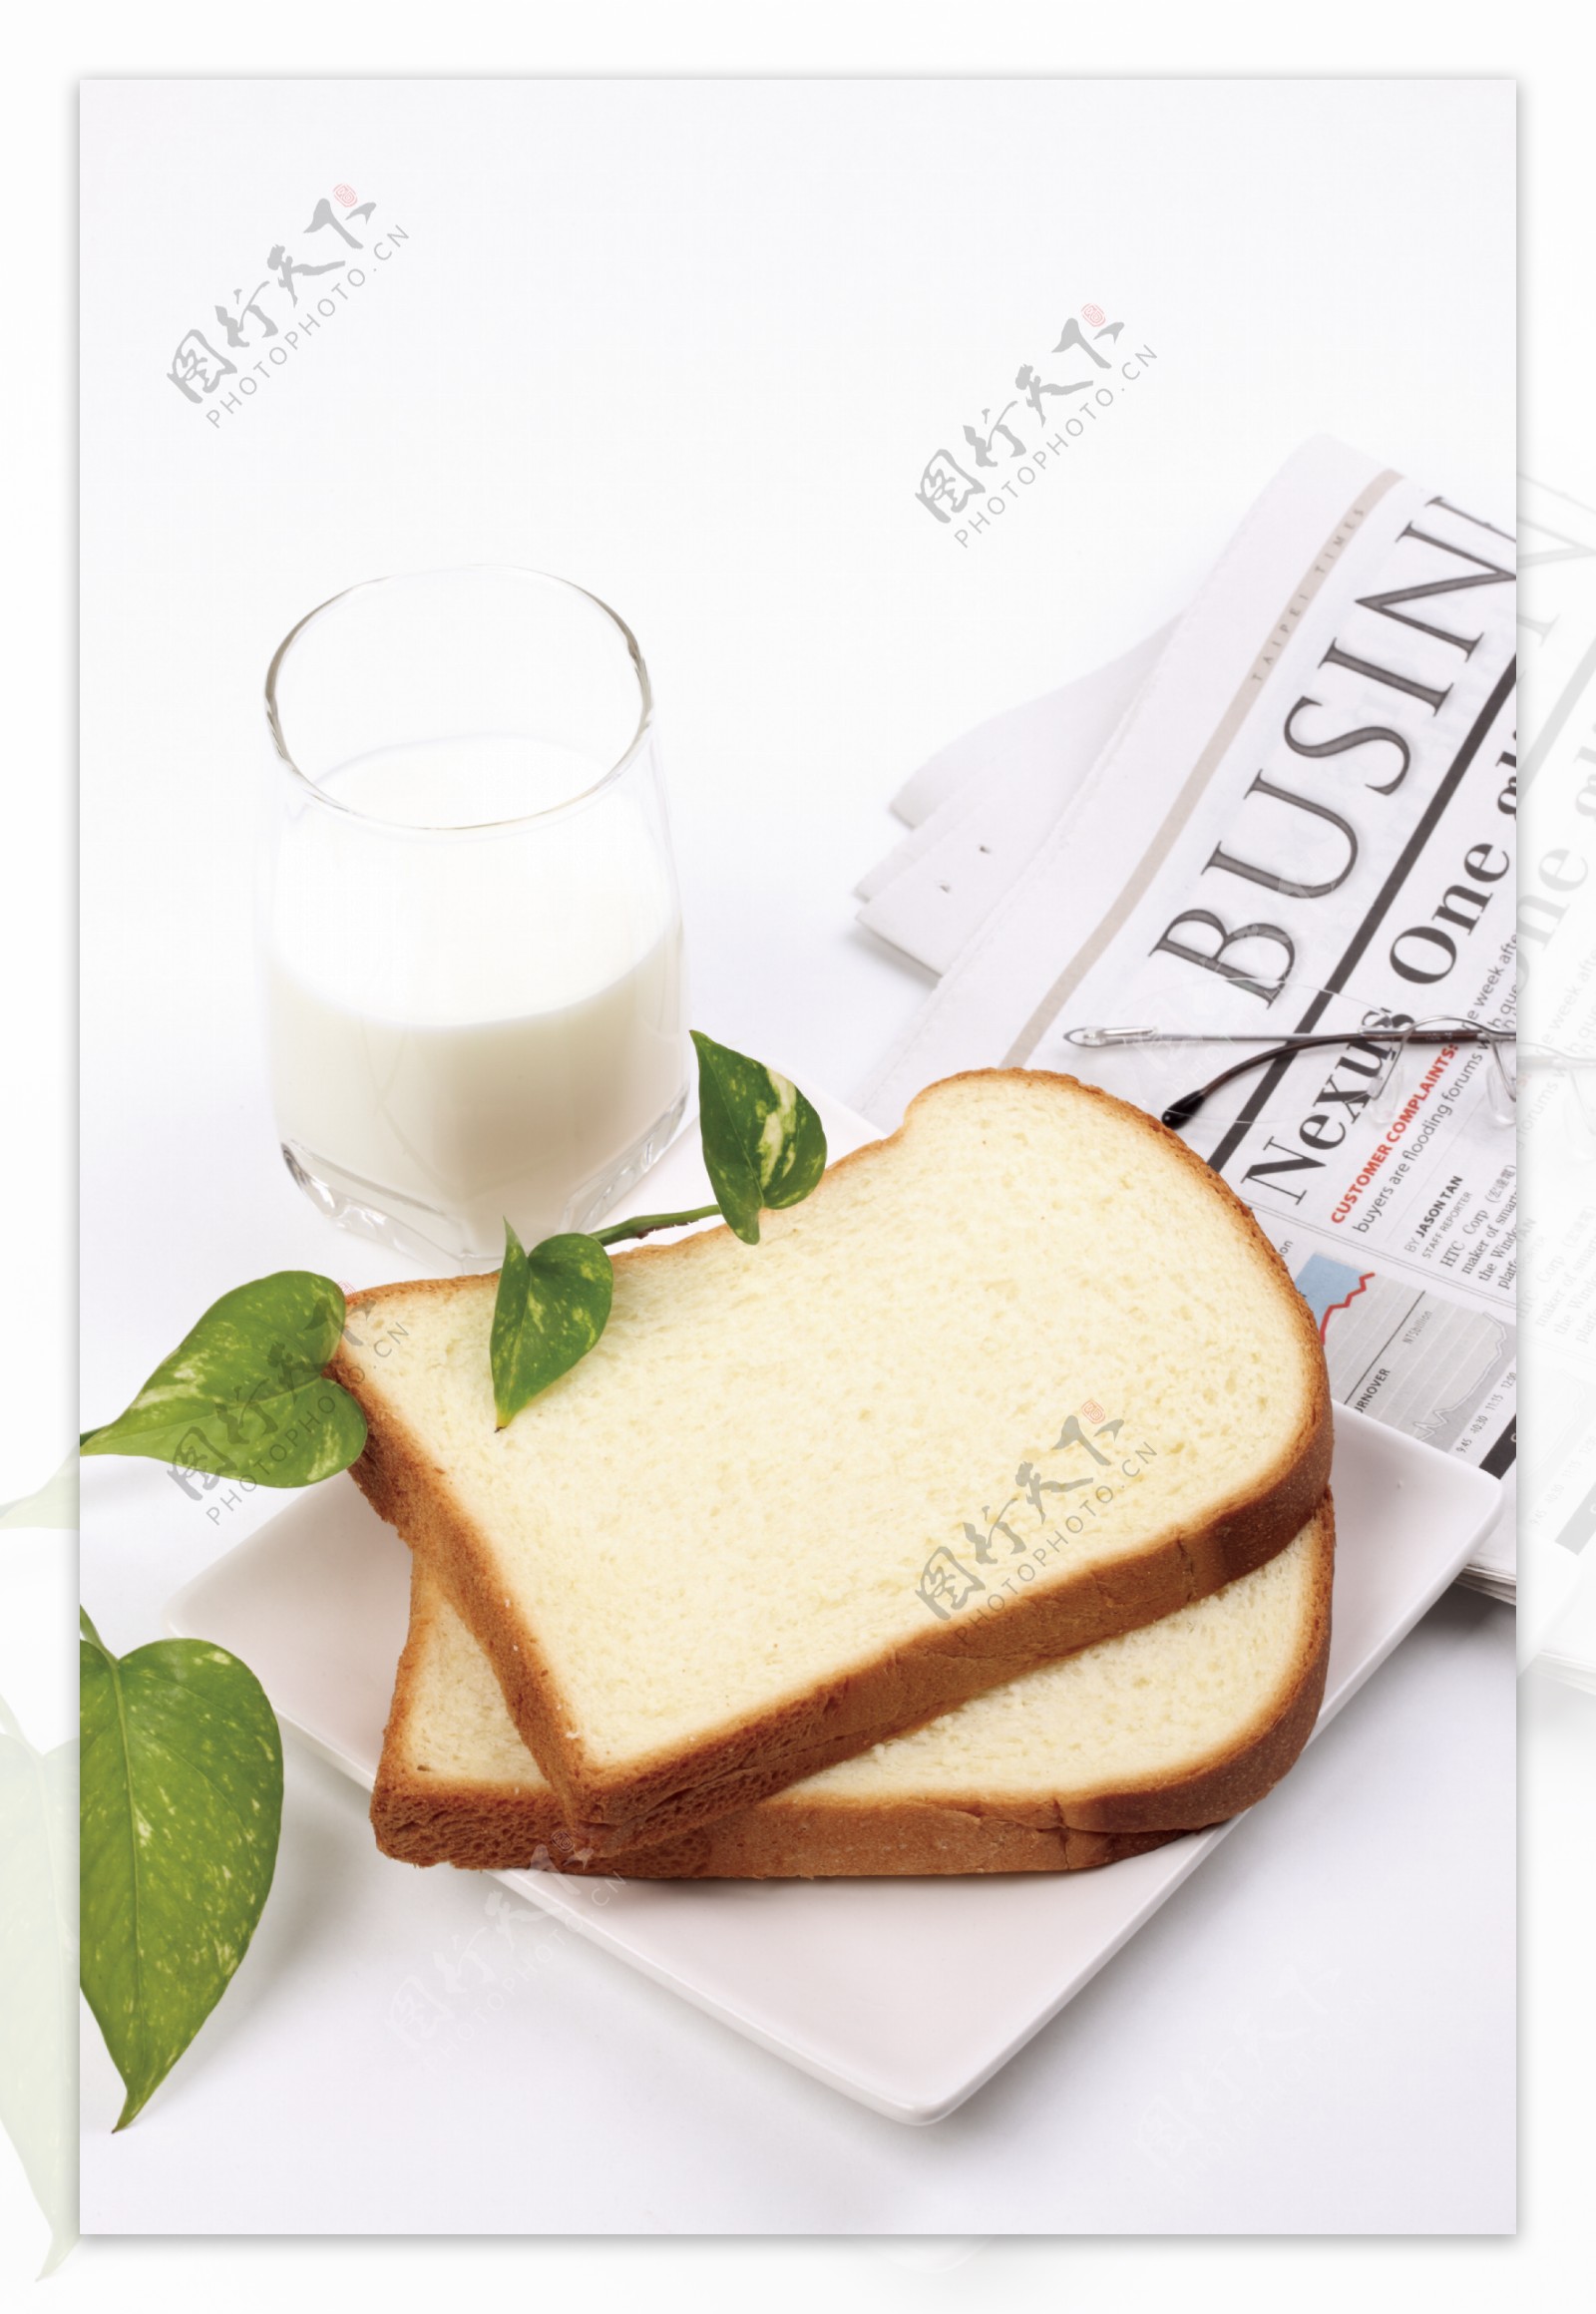 牛奶面包图片大全-牛奶面包高清图片下载-觅知网